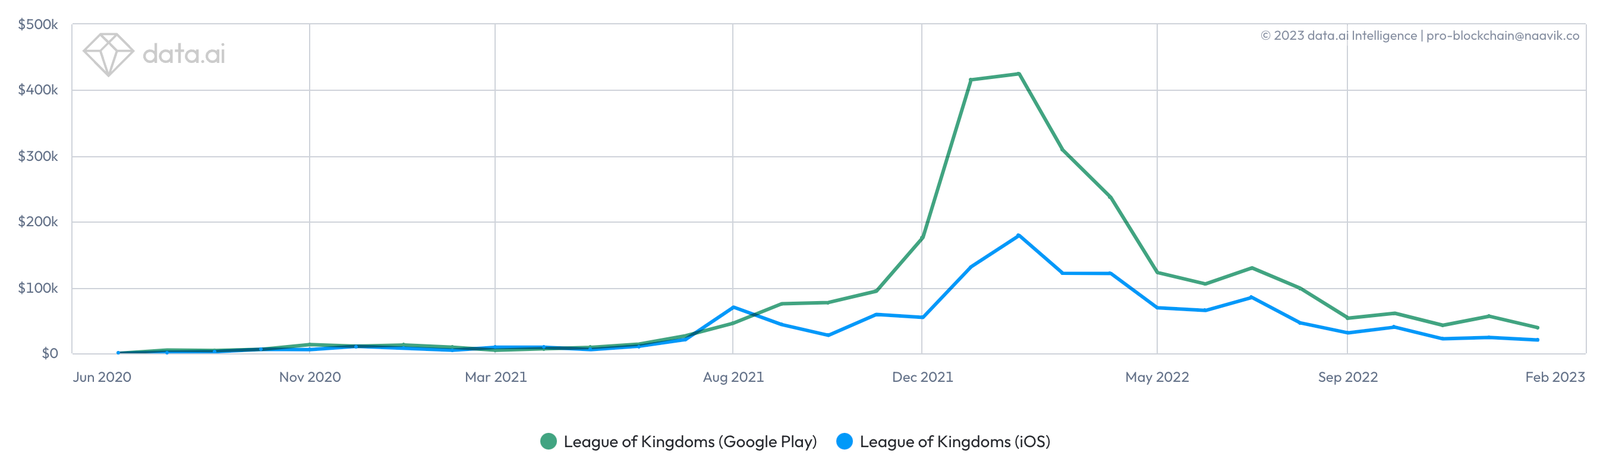 League of Kingdoms estimated monthly revenue